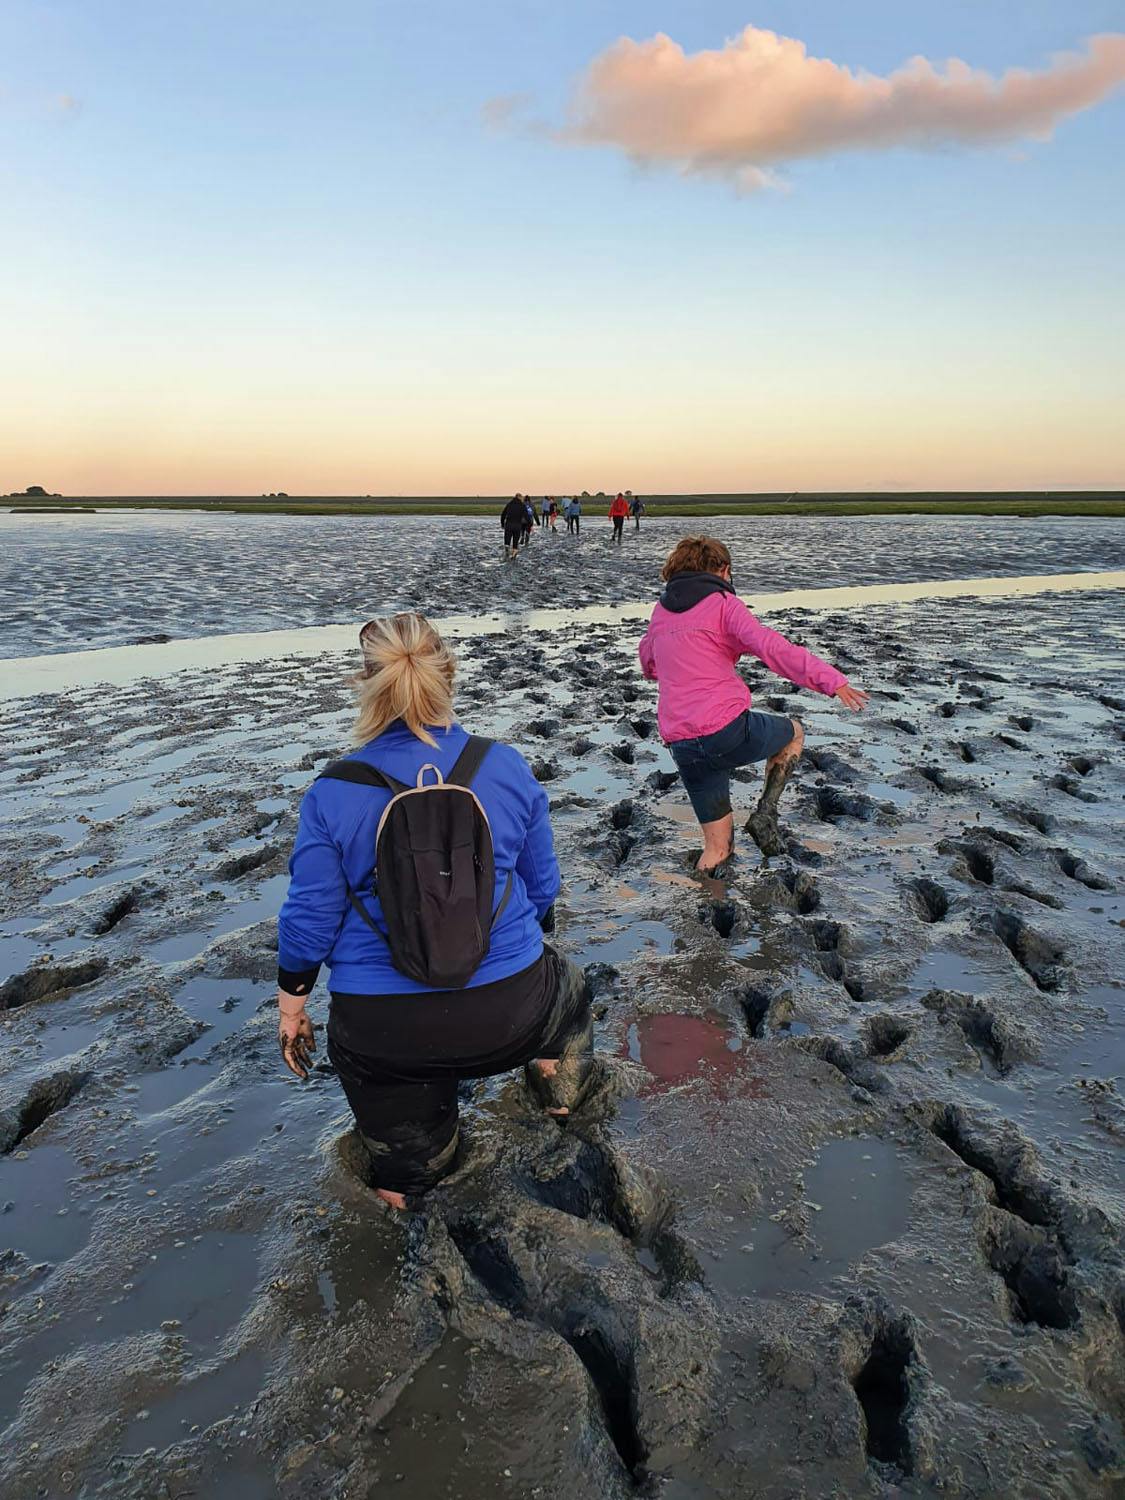 wadlopen - walking in wadden sea mud